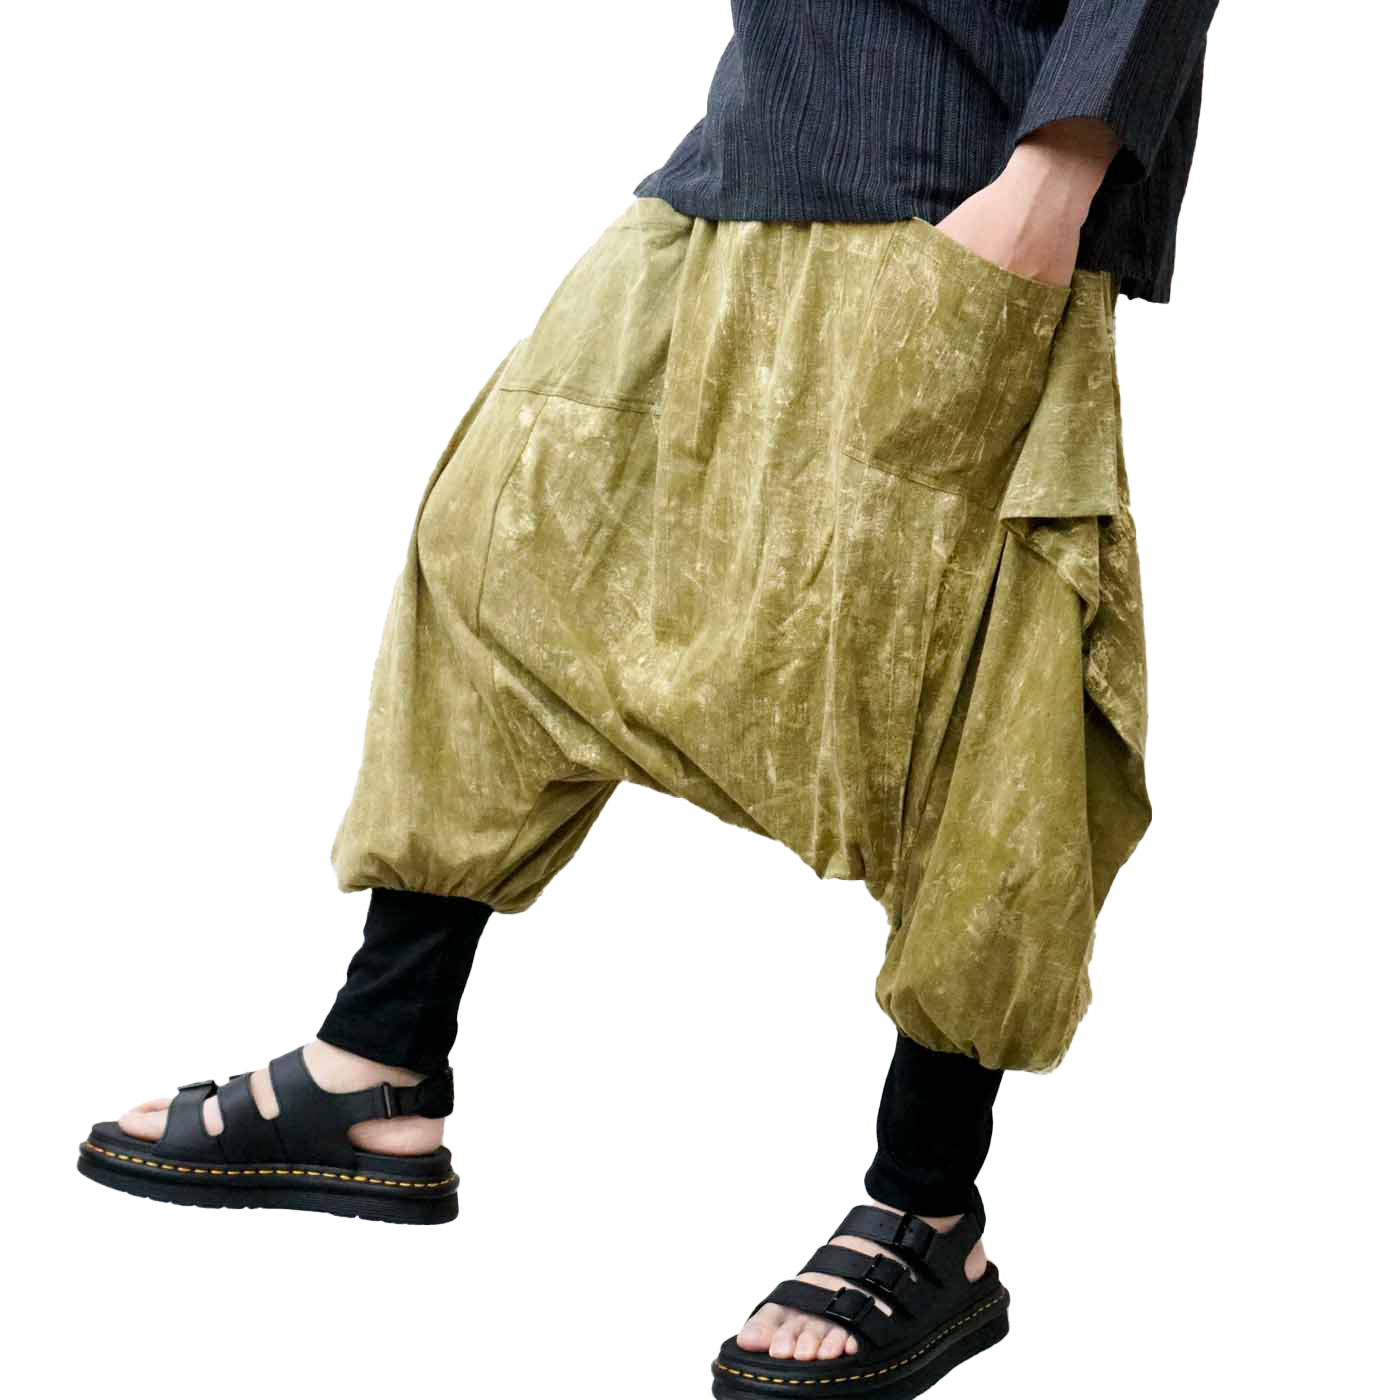 サルエルパンツ メンズ レディース 変型パンツ 変形パンツ アラジンパンツ ストーンウォッシュ アジアン エスニック ファッションブルー